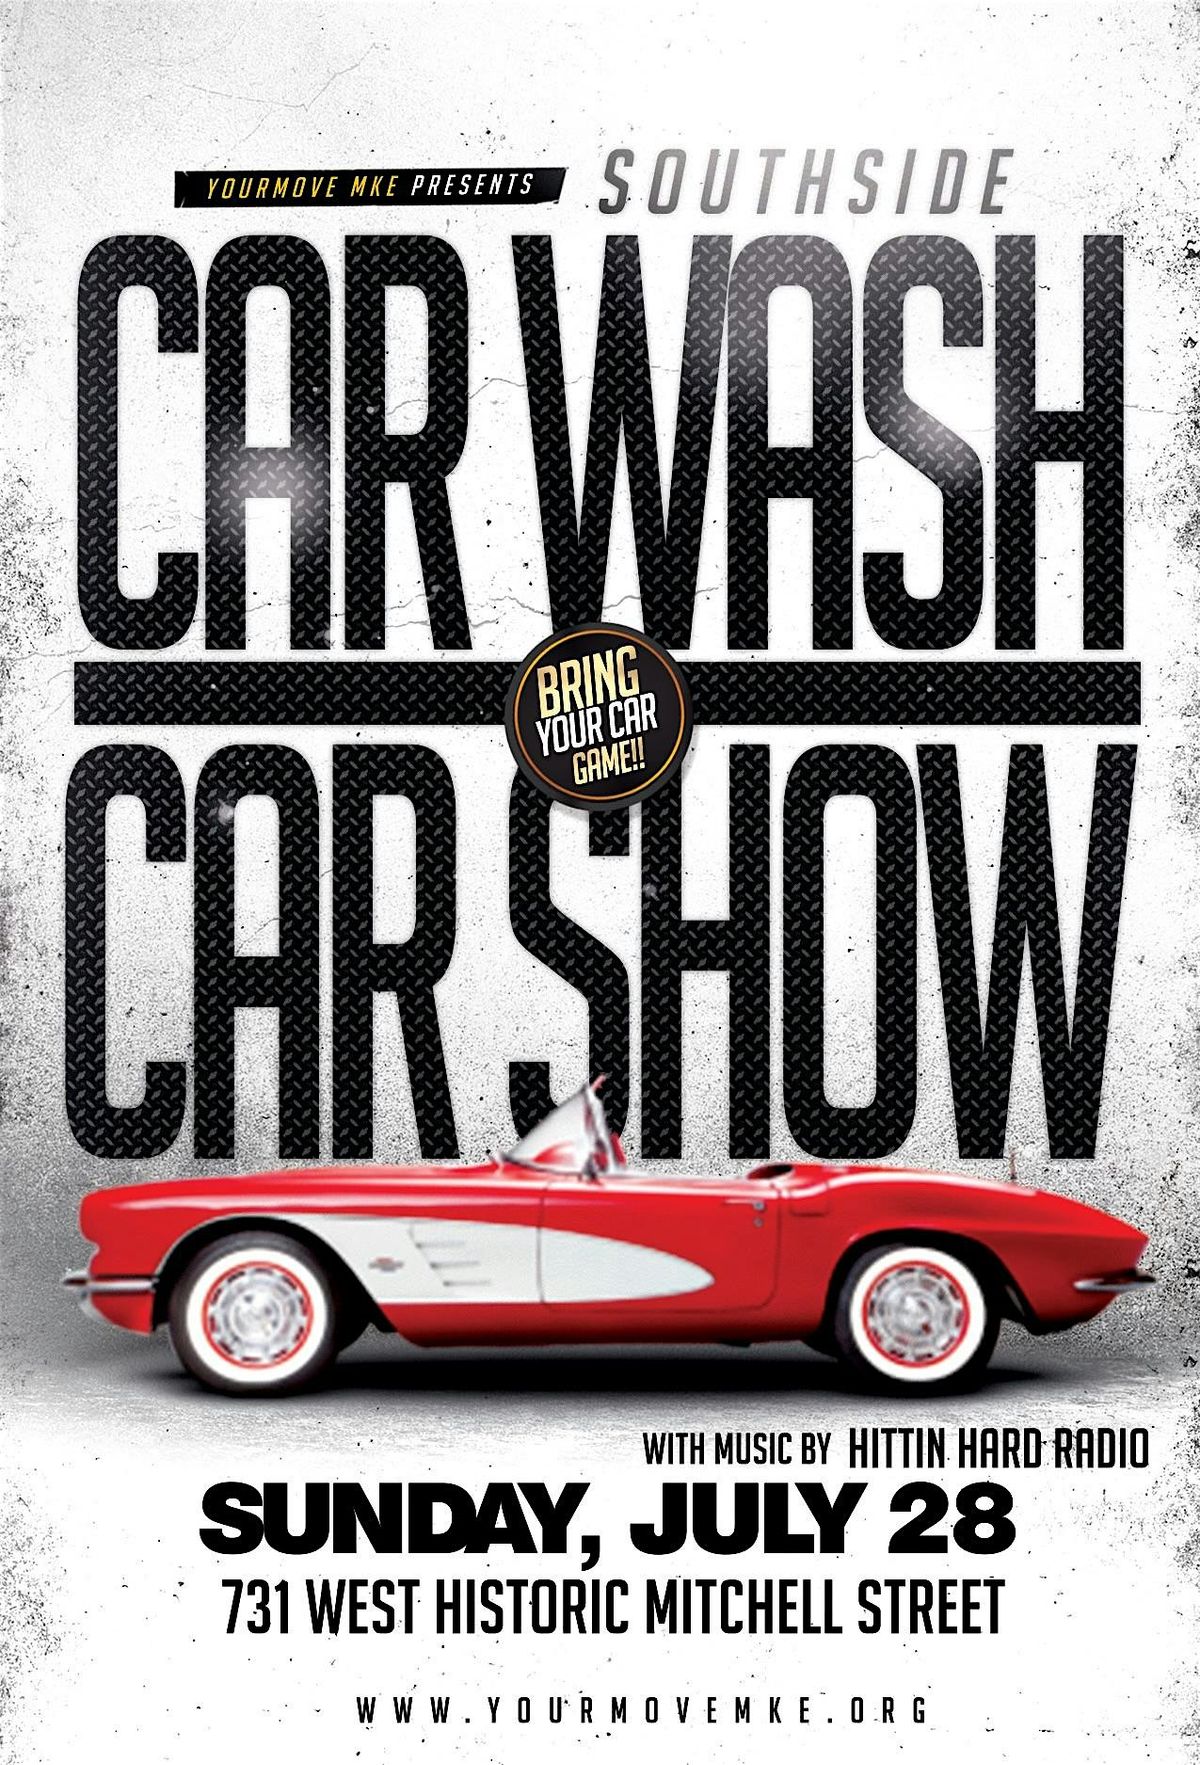 CAR WASH CAR SHOW